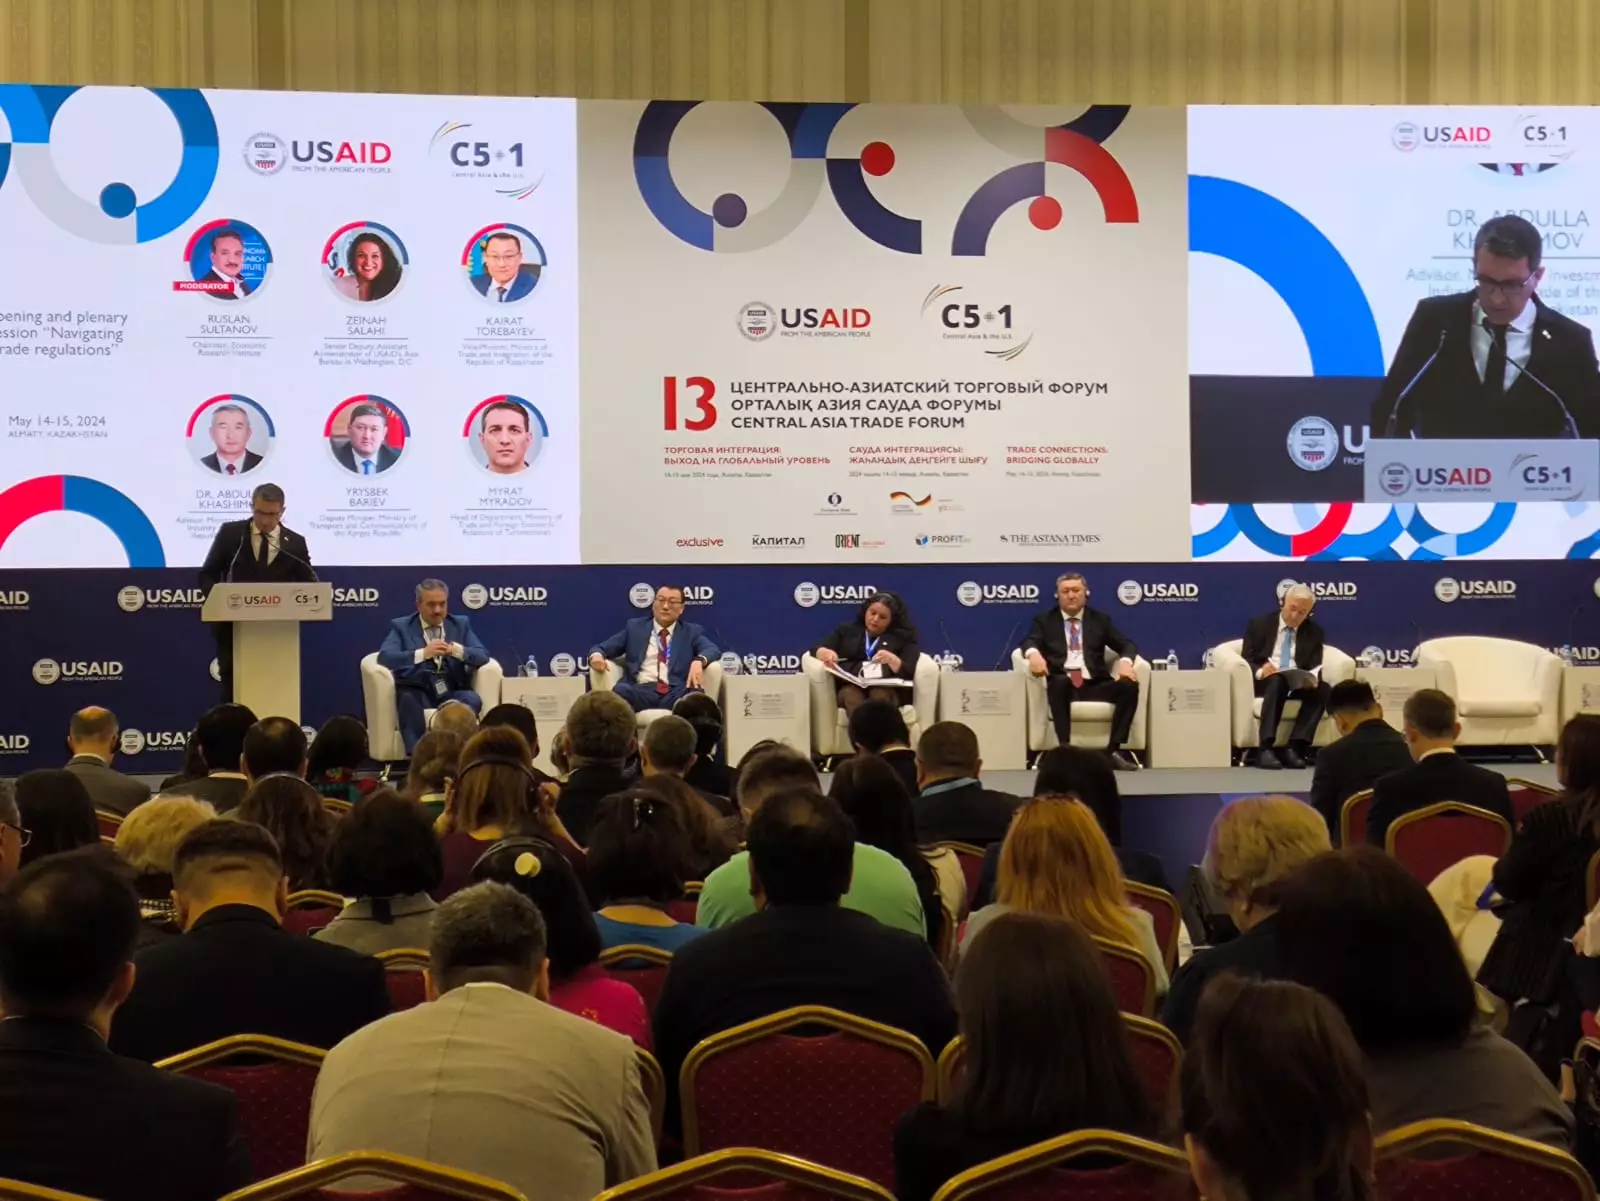 В Алматы начал работу 13-й Центрально-Азиатский торговый форум «Торговая интеграция: выход на глобальный уровень»